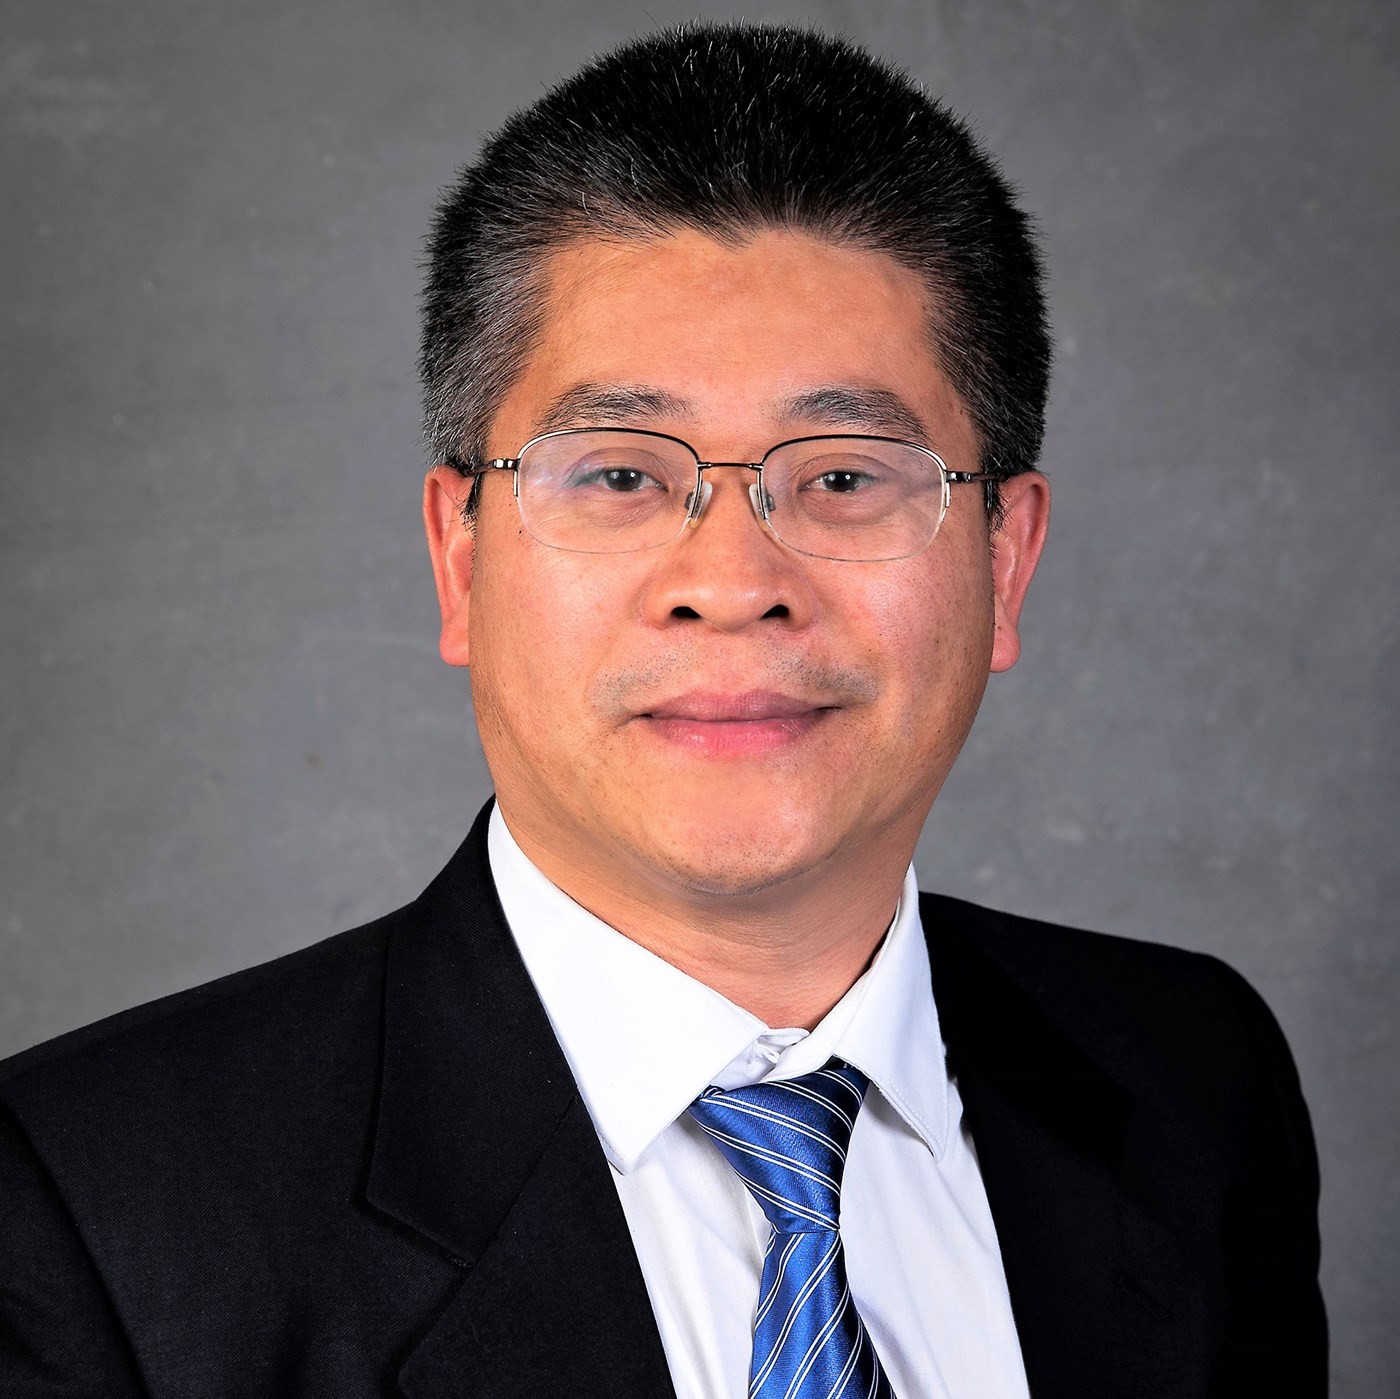 Dr. Jinxiang Xi, do departamento de Engenharia Biomédica da Universidade de Massachusetts Lowell, o autor da pesquisa divulgada (Foto: Reprodução)